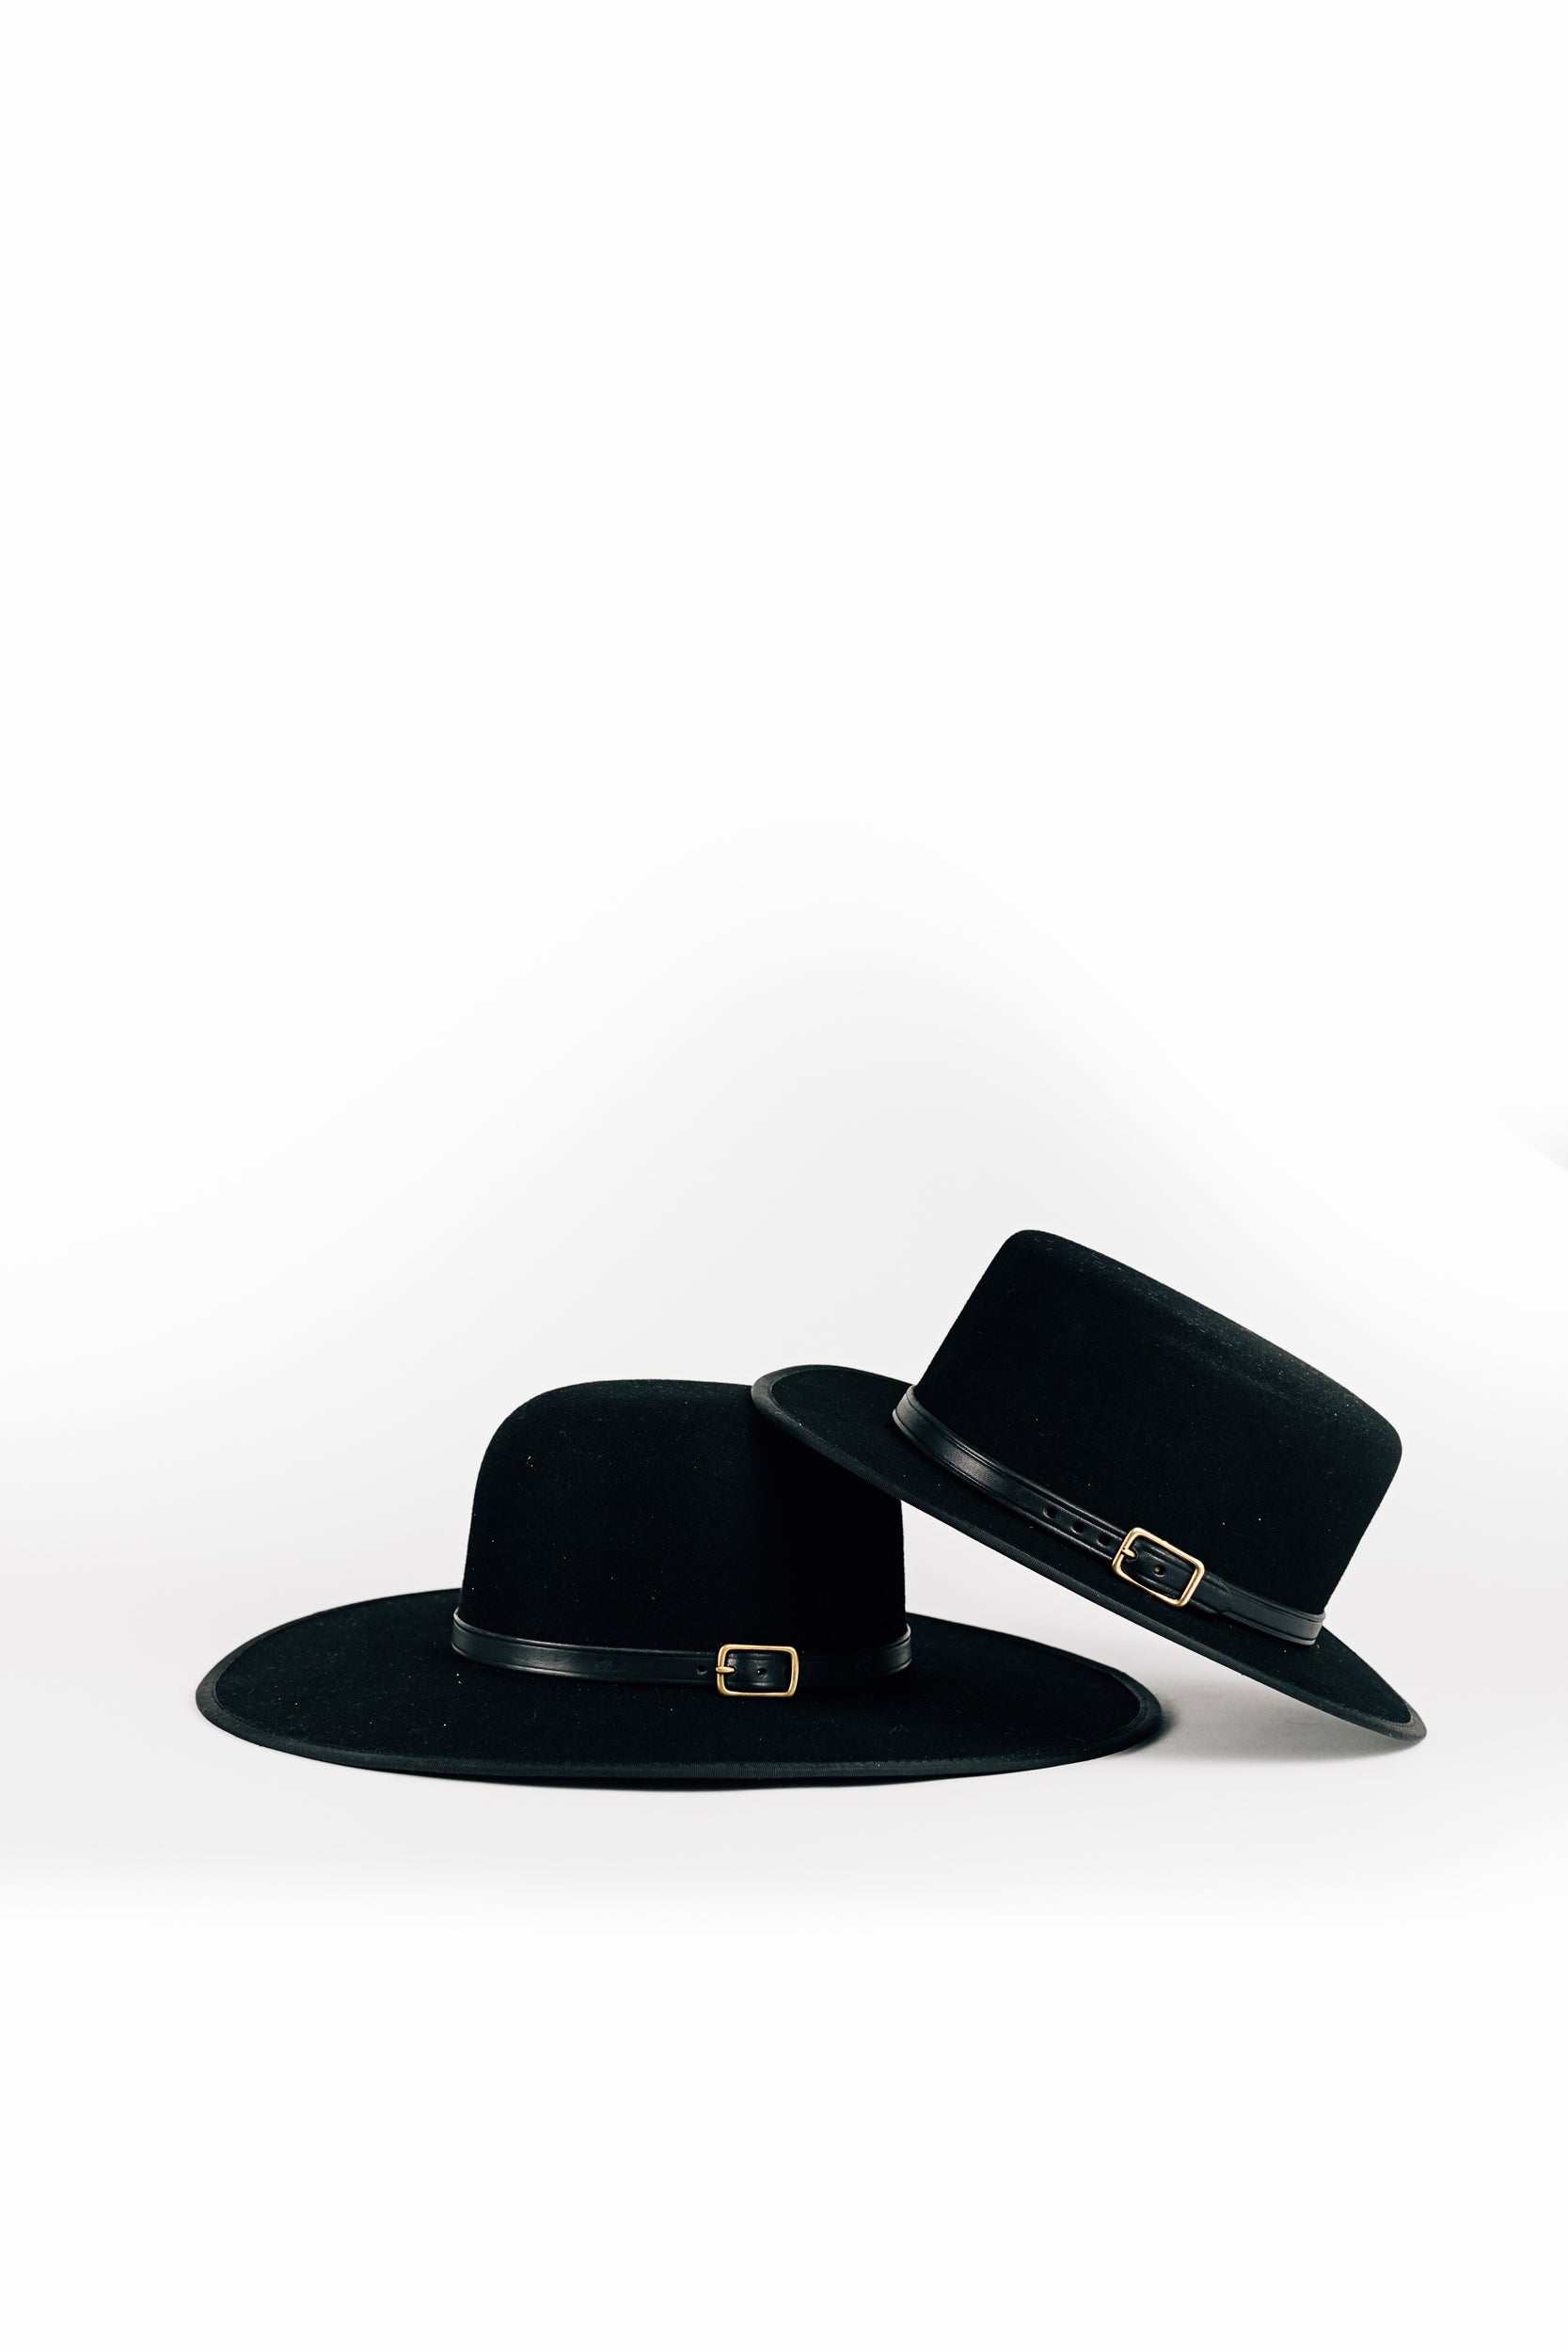 The Wide Rimmed Black Saddle Hat